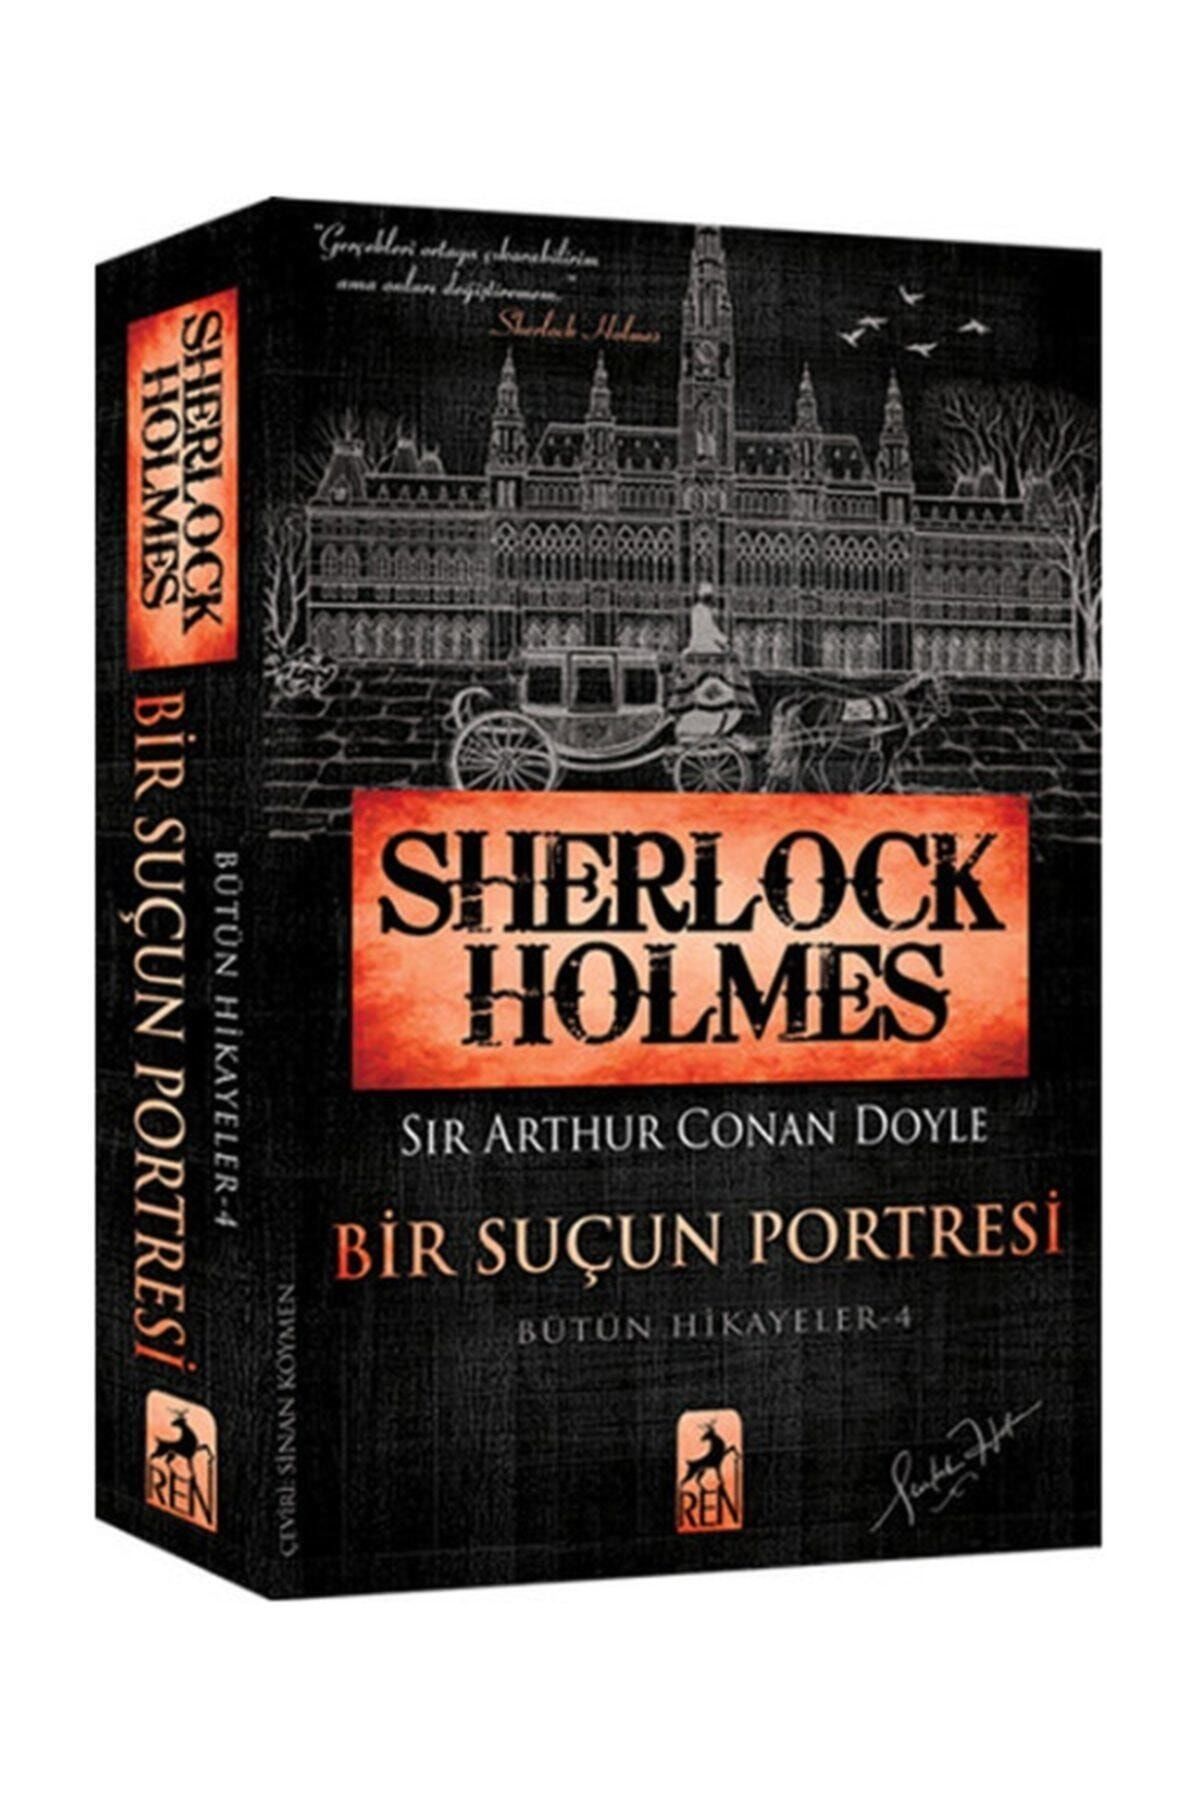 Renato Balestra Sherlock Holmes - Bir Suçun Portresi - Bütün Hikayeler 4 - Sir Arthur Conan Doyle